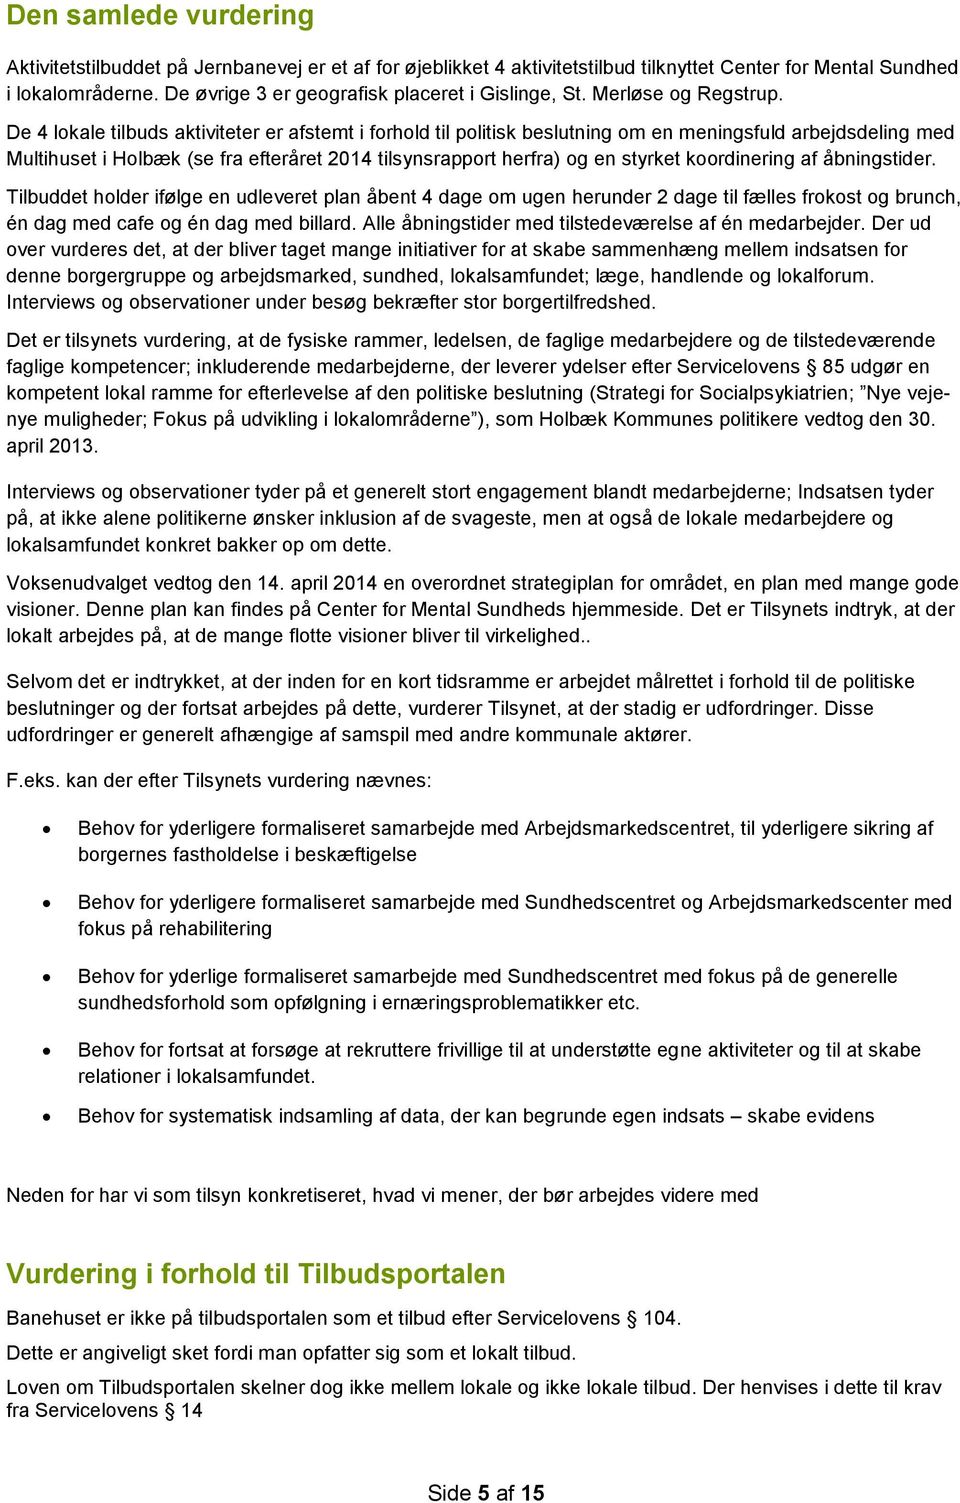 De 4 lokale tilbuds aktiviteter er afstemt i forhold til politisk beslutning om en meningsfuld arbejdsdeling med Multihuset i Holbæk (se fra efteråret 2014 tilsynsrapport herfra) og en styrket